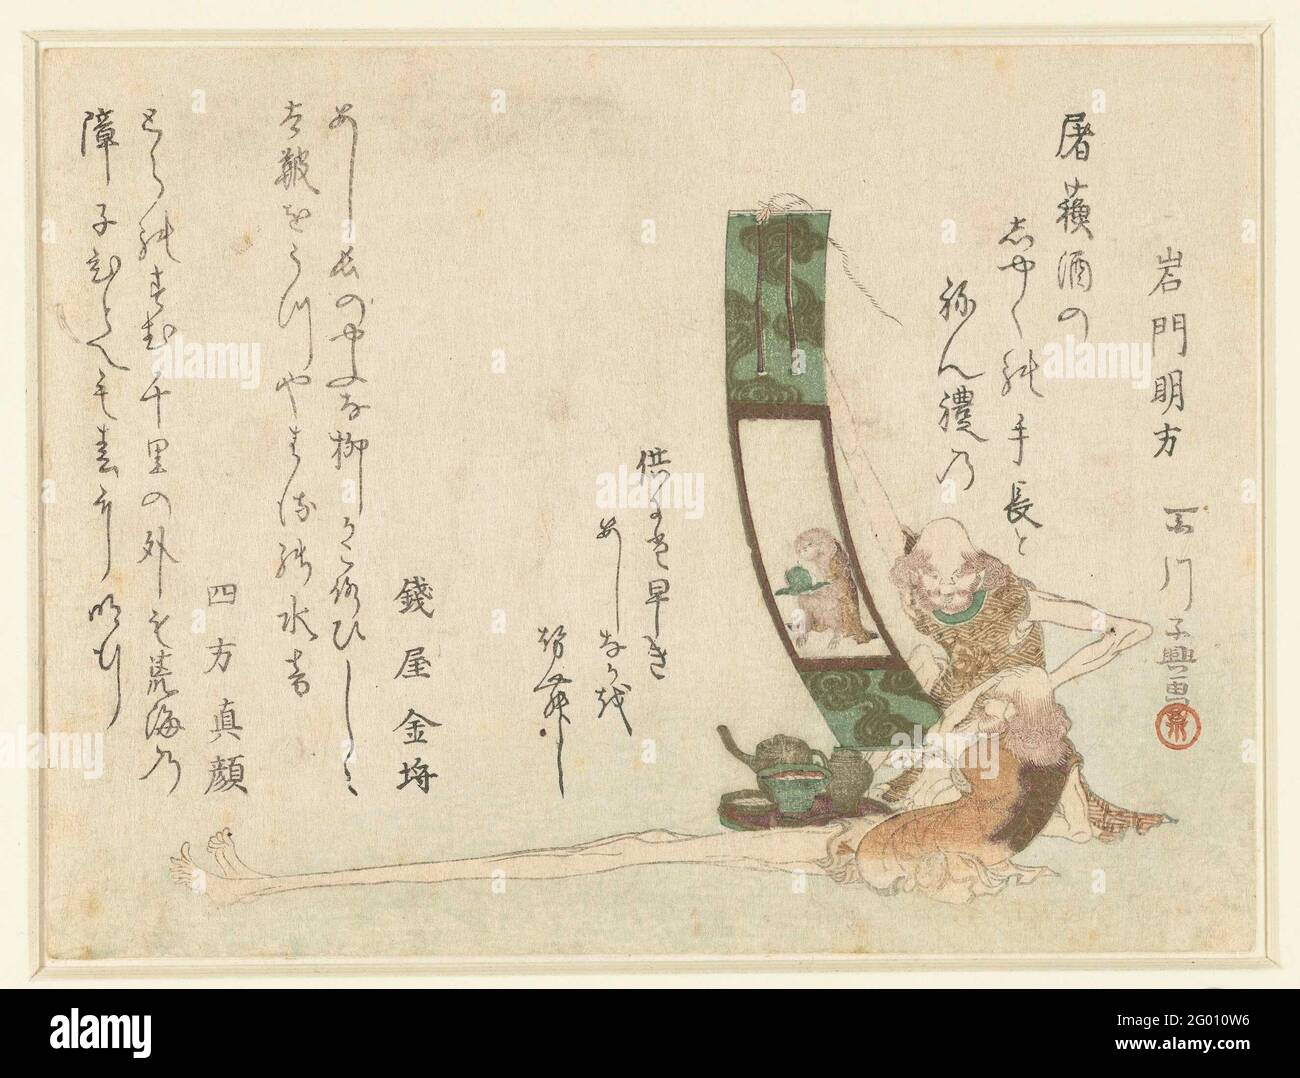 Gamba lunga e braccio lungo. Due figure leggendarie sono mostrate con tre poesie corrispondenti. Una figura a gambe lunghe (Ashinaga) ammira un dipinto di una scimmia, l'altra a braccia lunghe (Tenaga) contiene un vassoio con una pesca. Tre poesie. Foto Stock